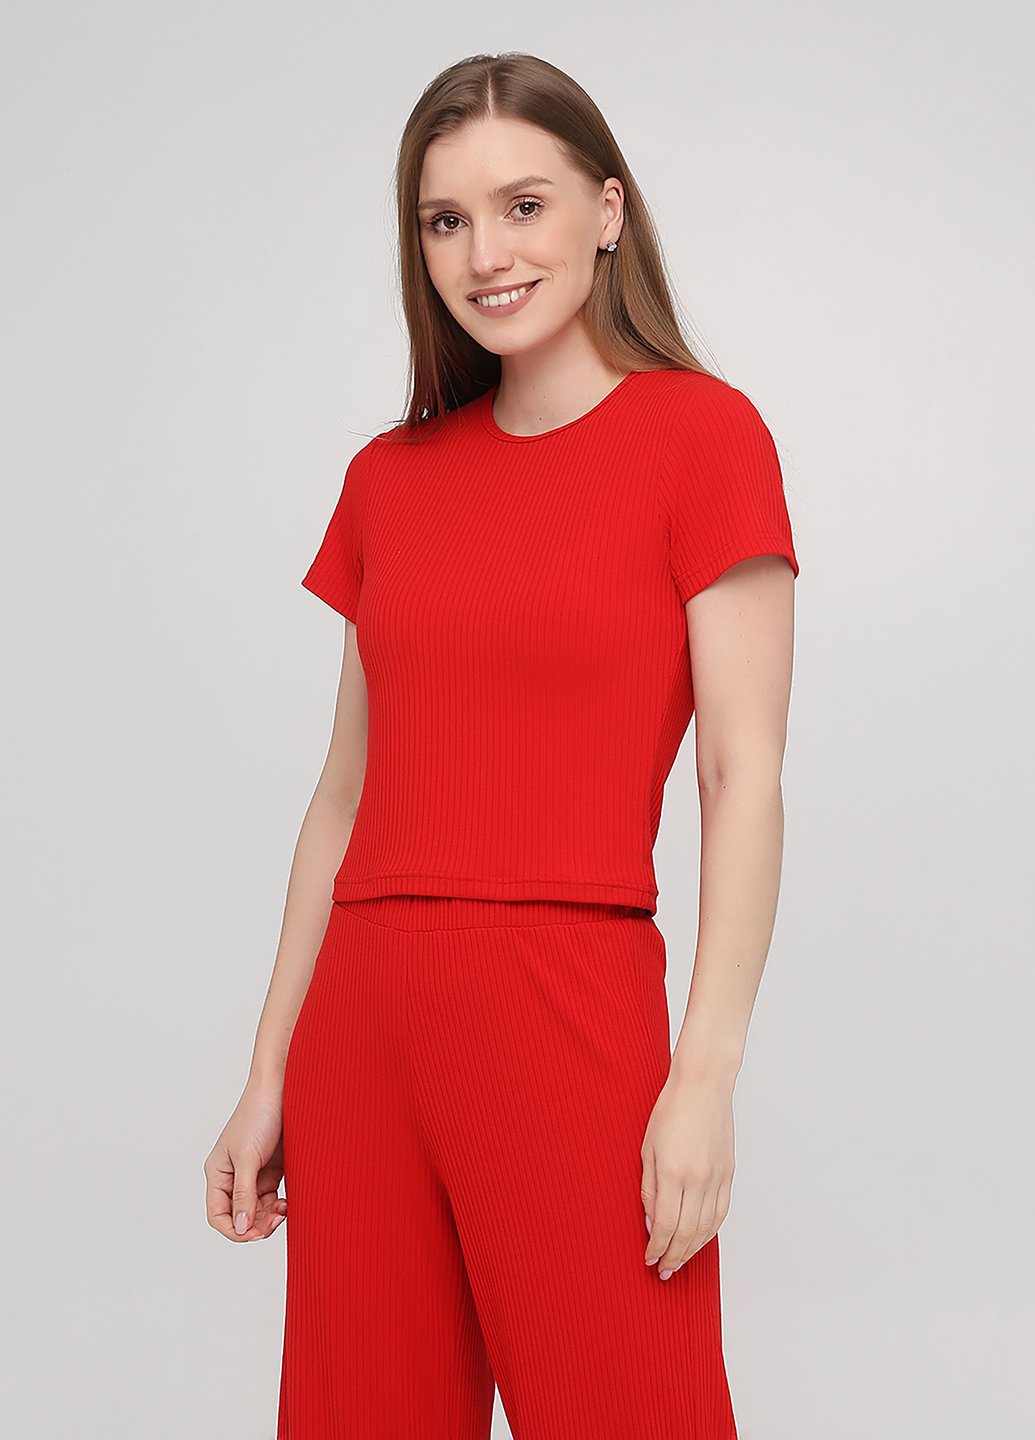 Купить футболка женская в рубчик Merlini Шер 800000018 - Красный, 42 в интернет-магазине